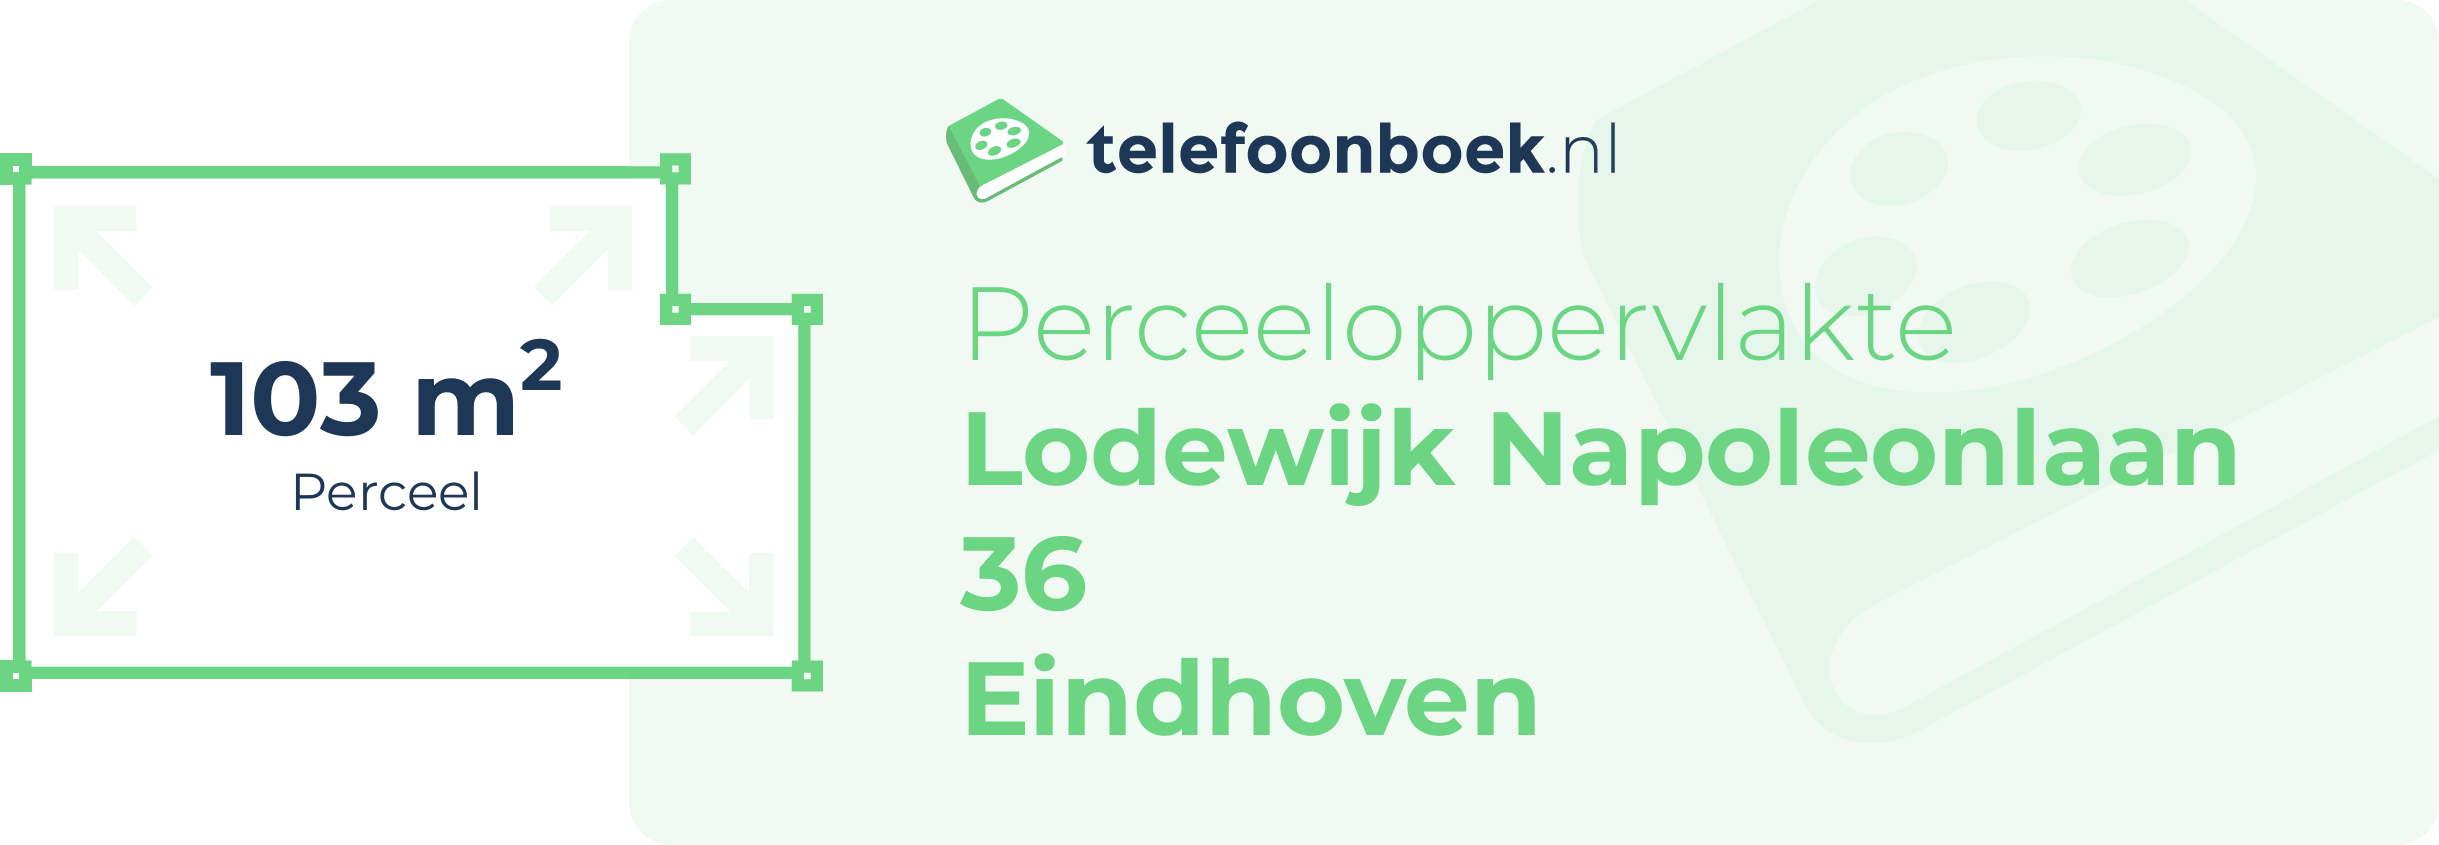 Perceeloppervlakte Lodewijk Napoleonlaan 36 Eindhoven